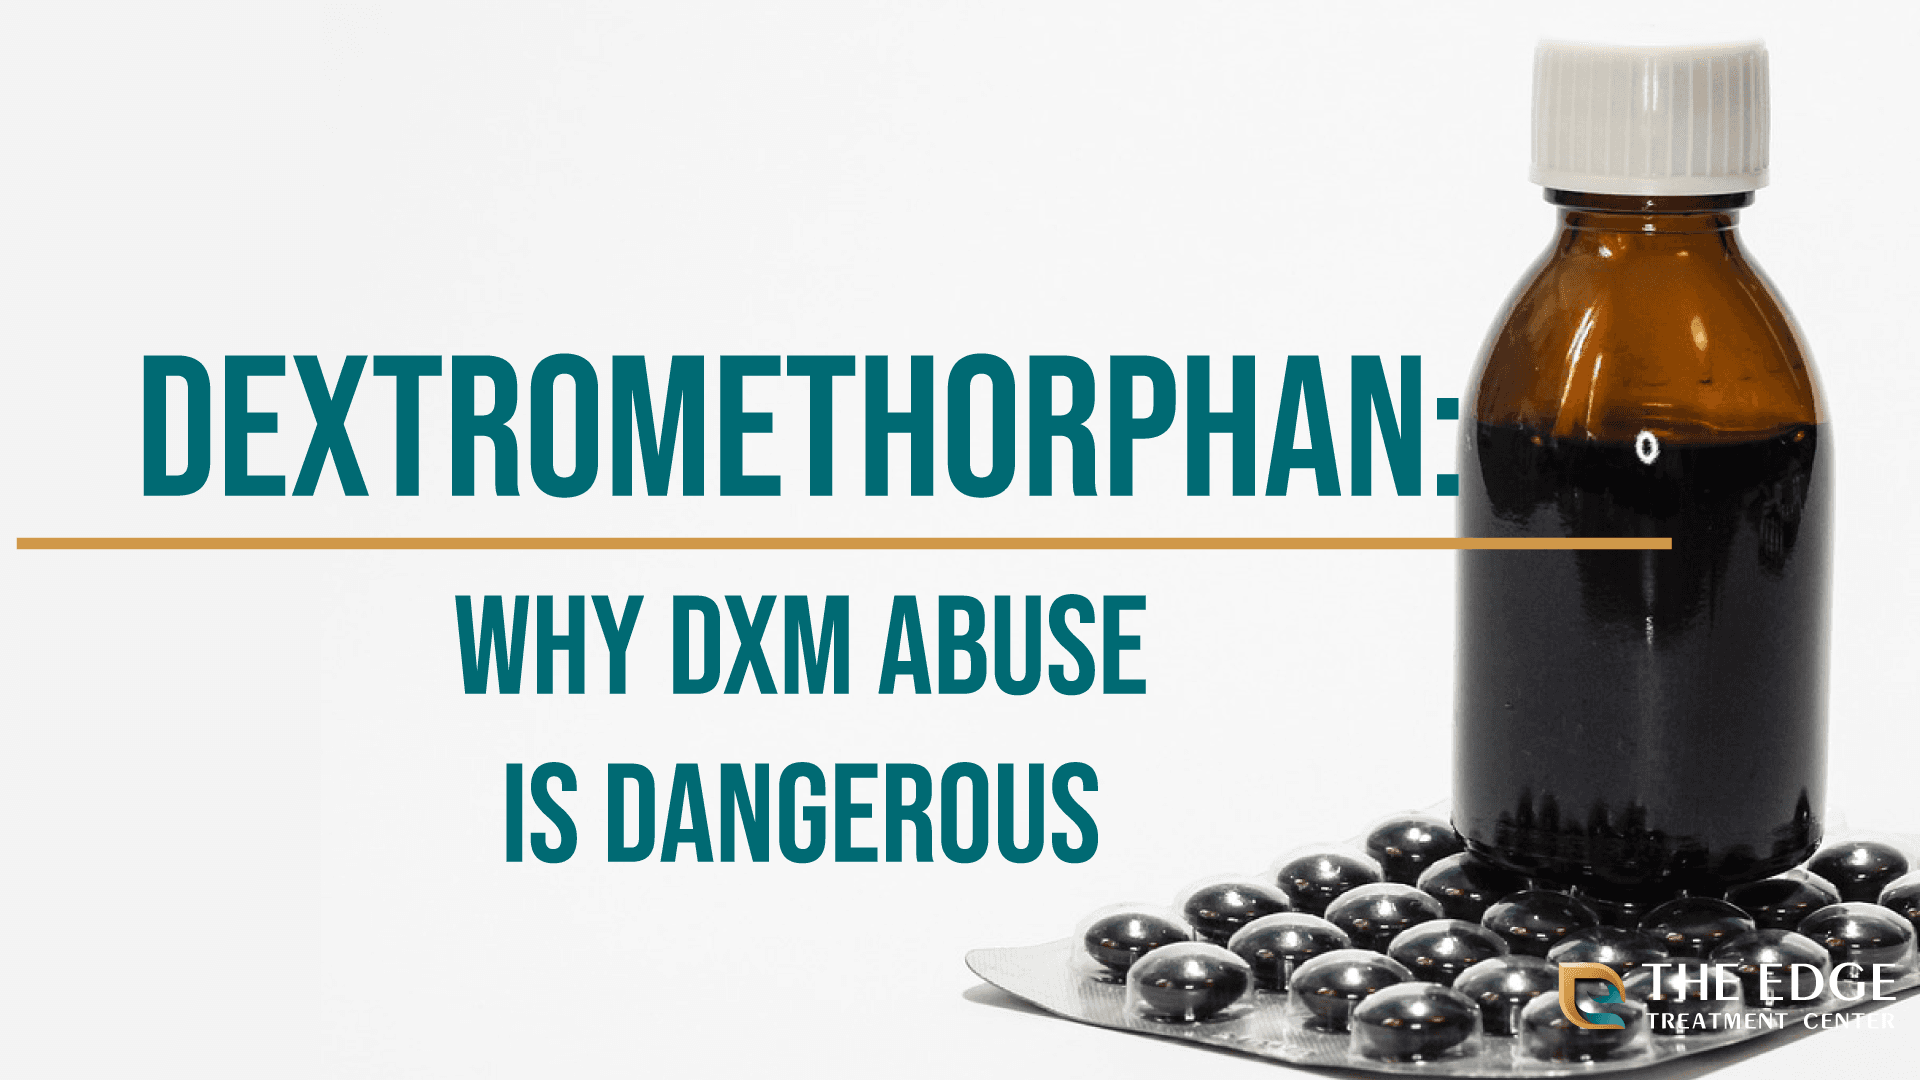 What is Dextromethorphan?